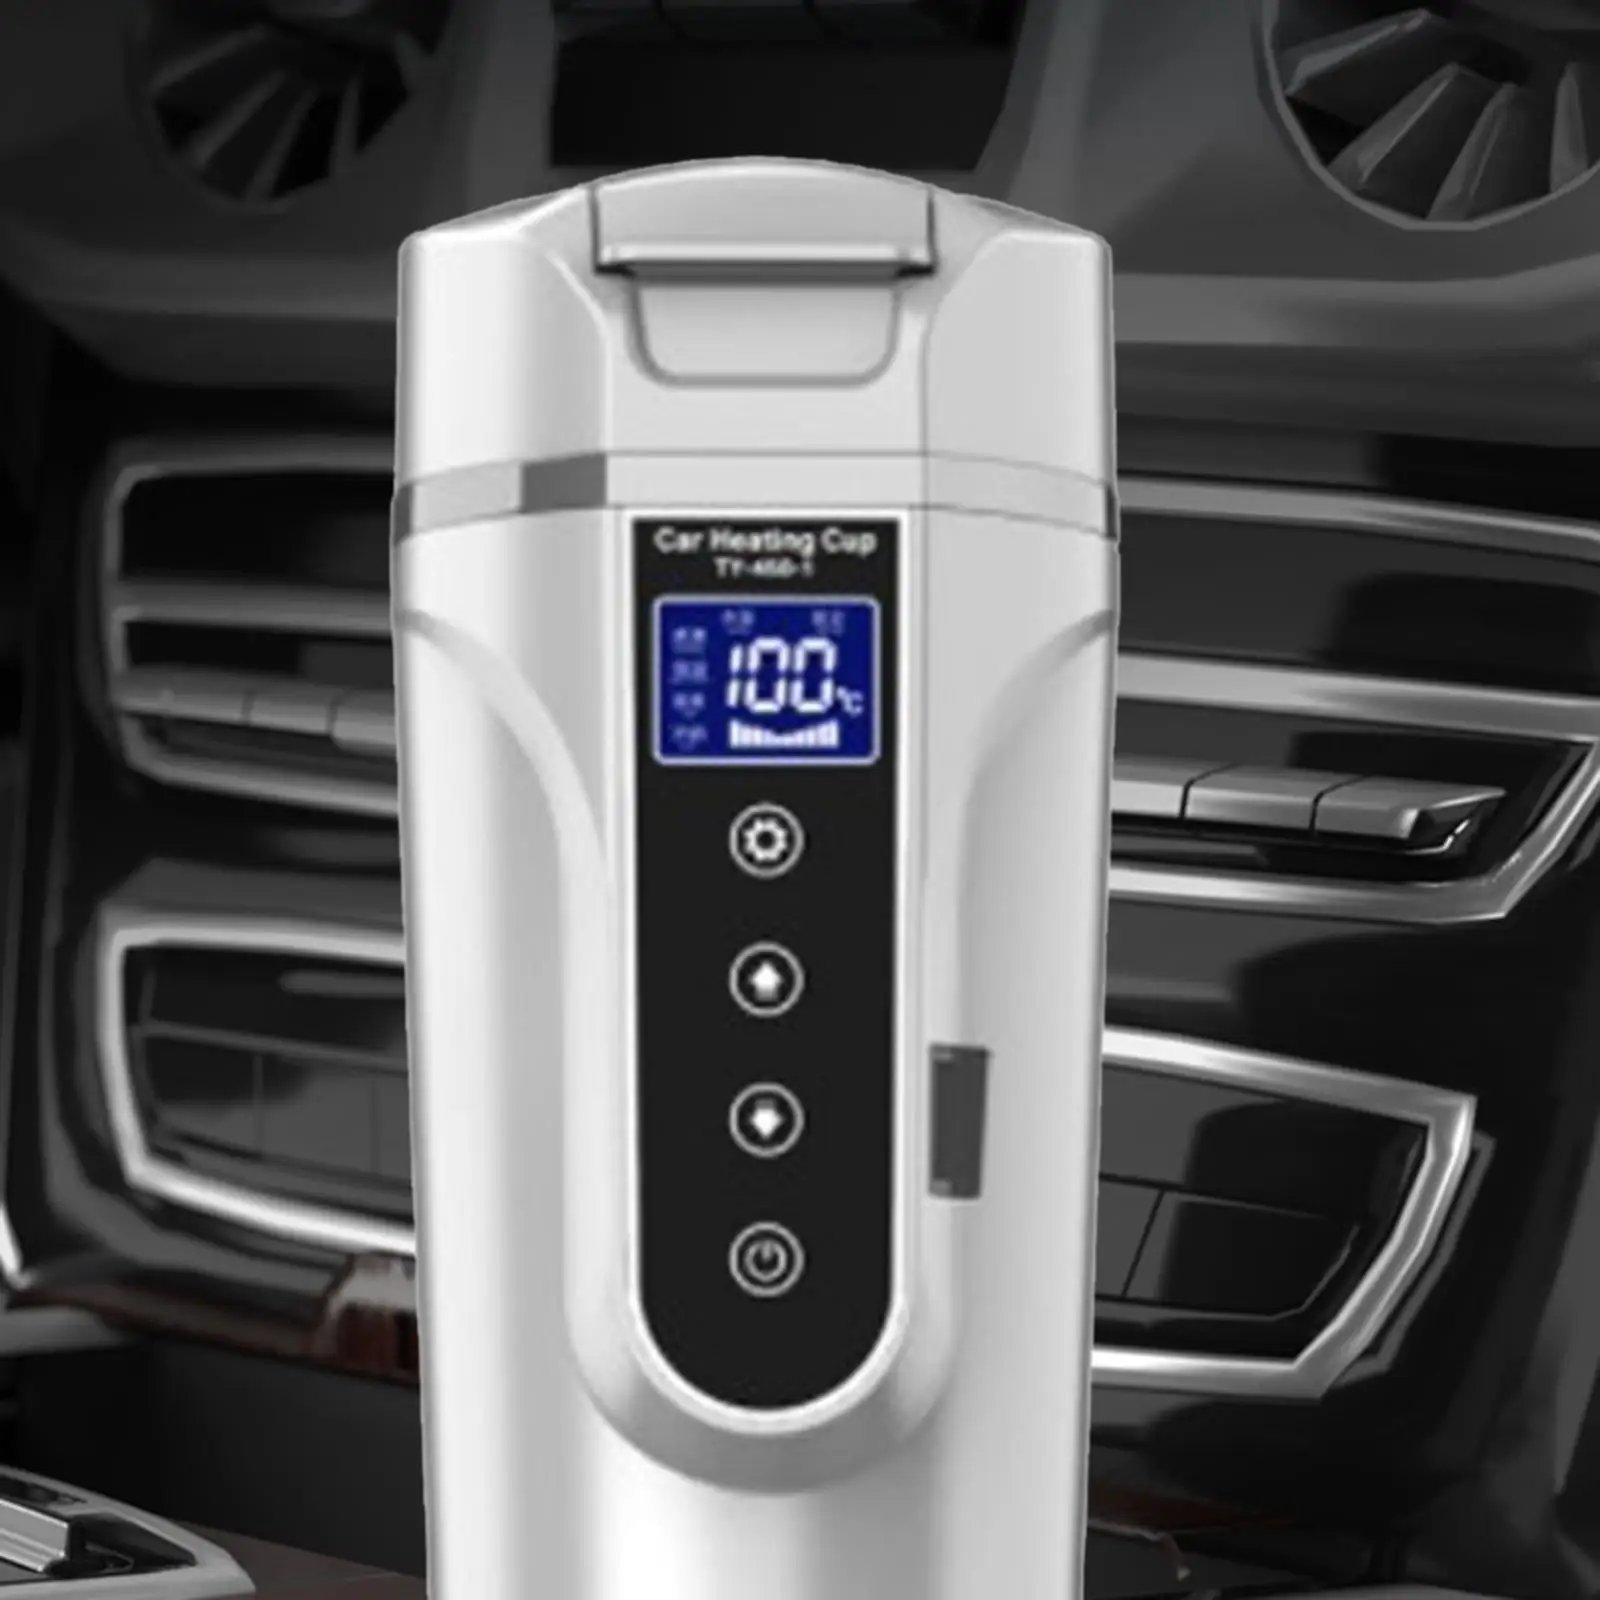 Car Kettle Heating Cup 12V/24V 450ml Fit for Travel Cigarette Lighter Milk